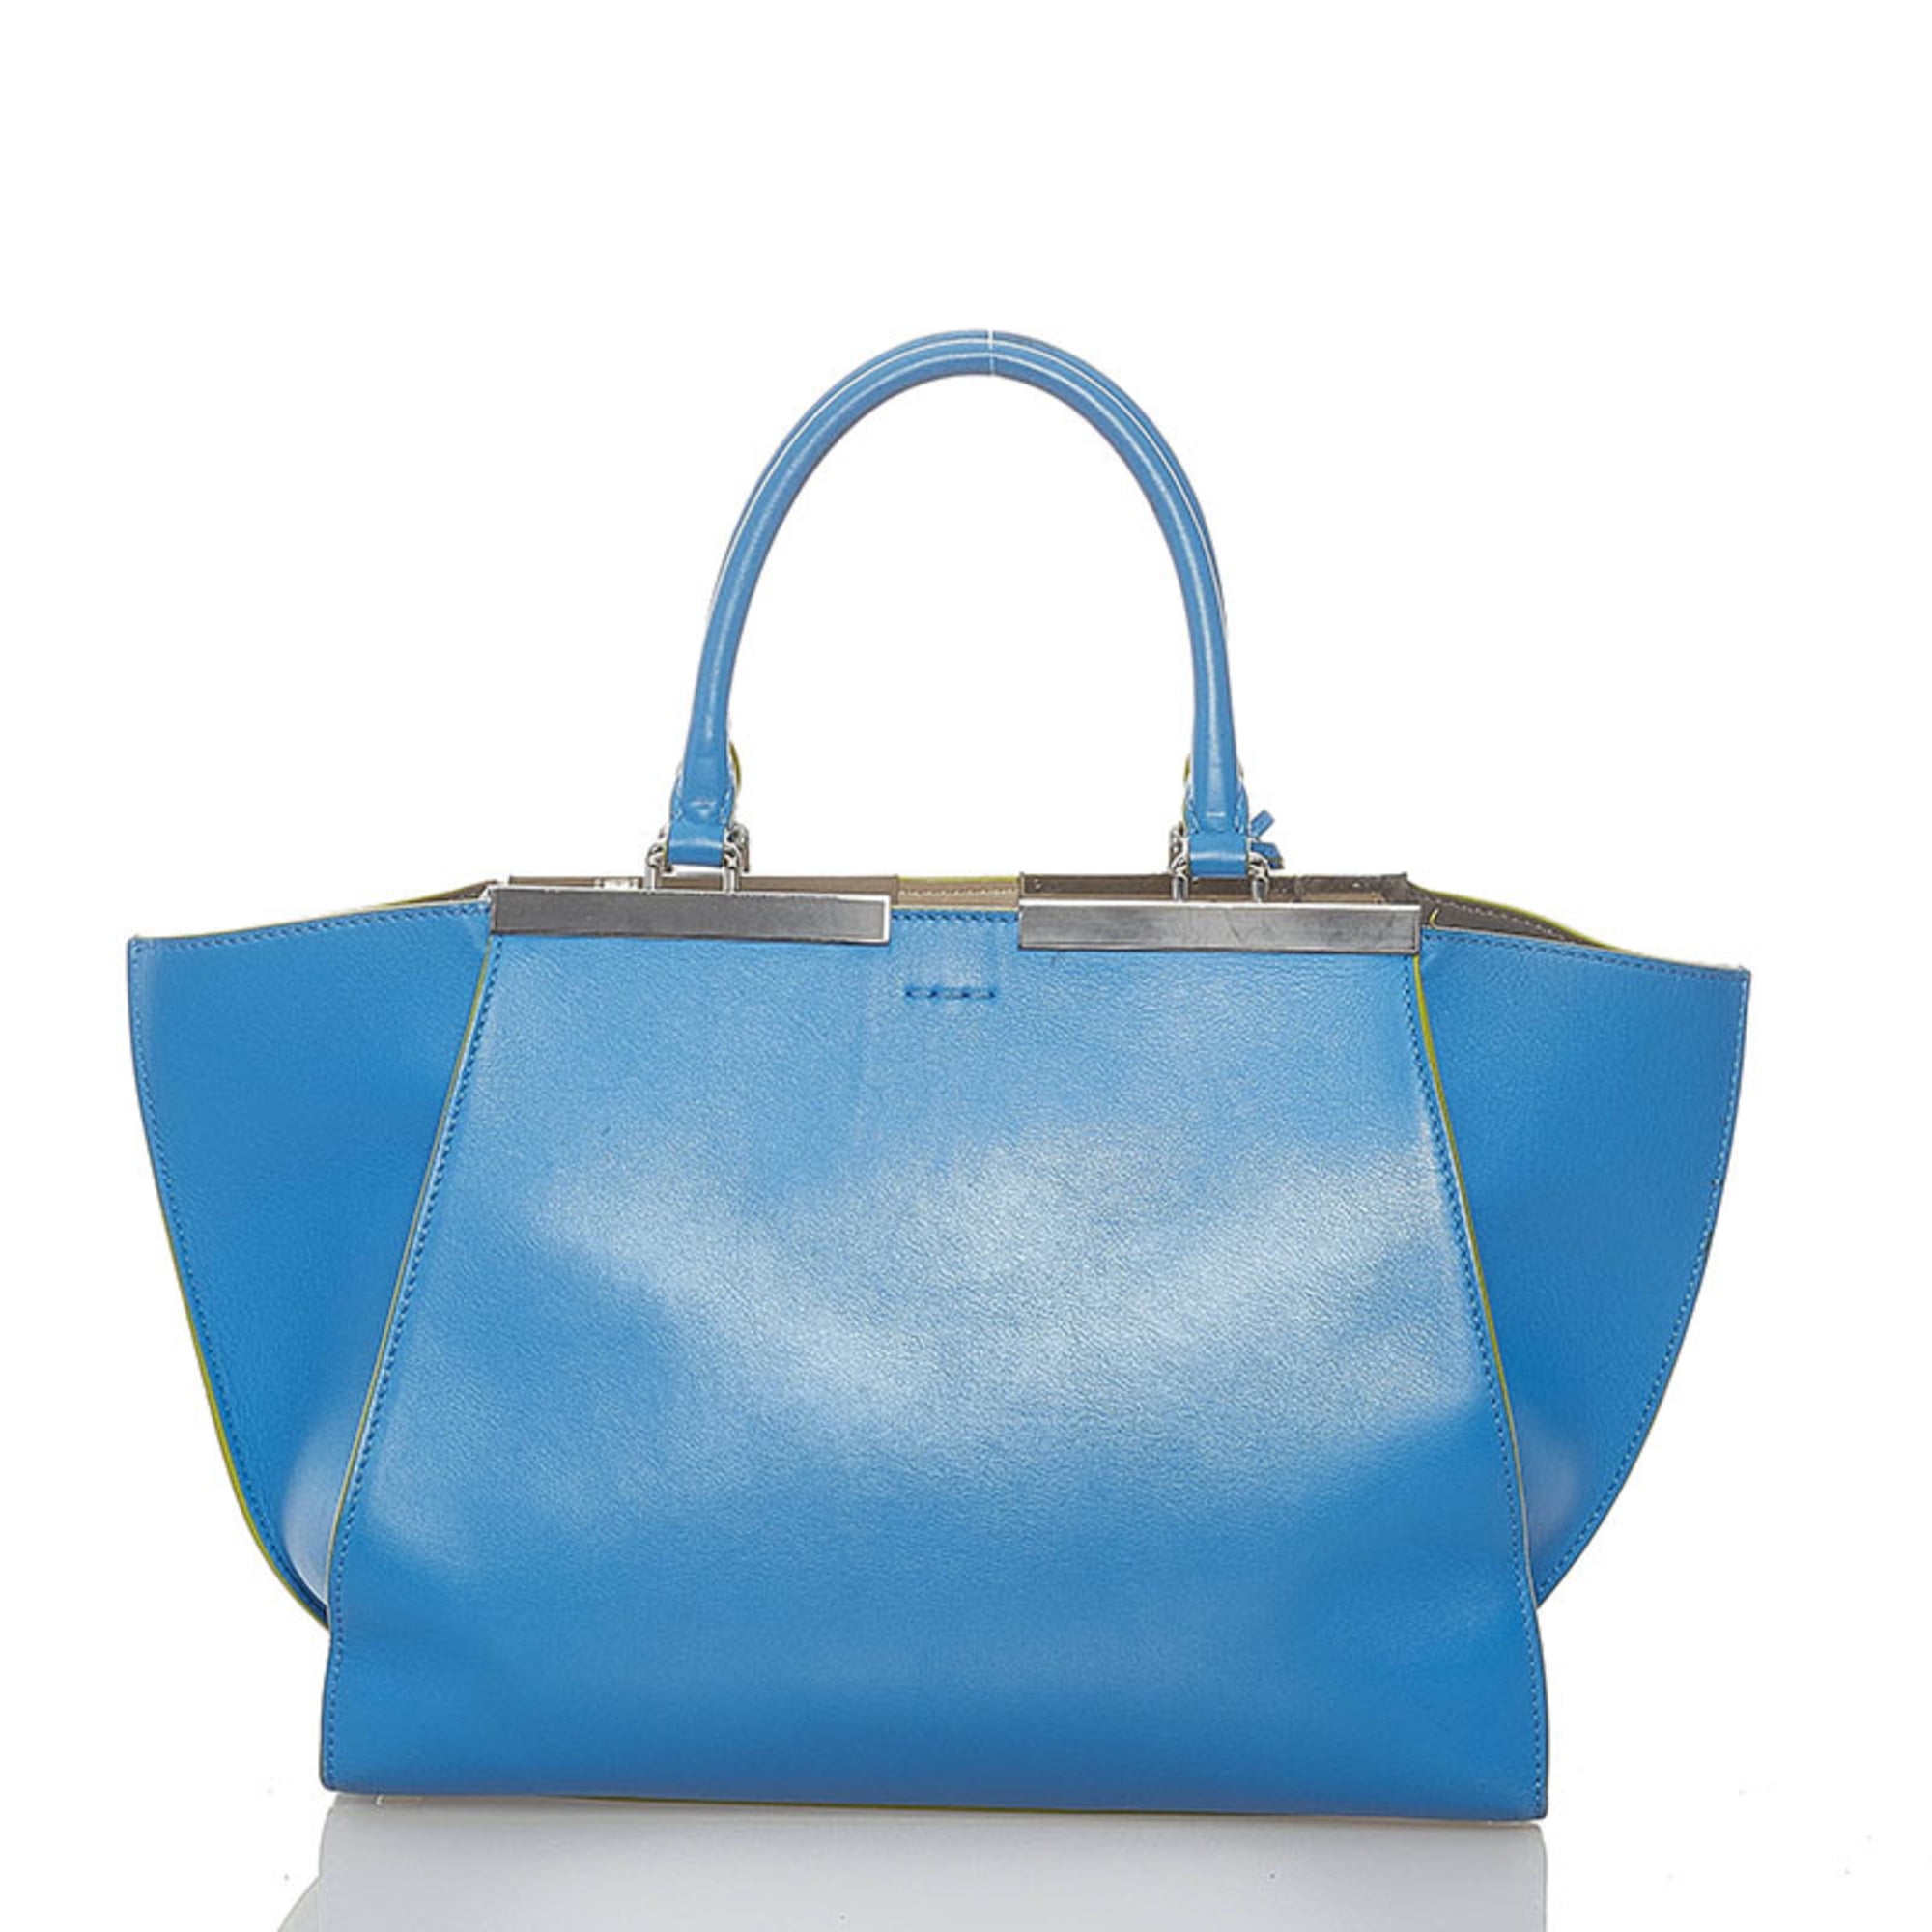 Pre-Owned Fendi Troisour handbag shoulder bag 8BH279 blue leather